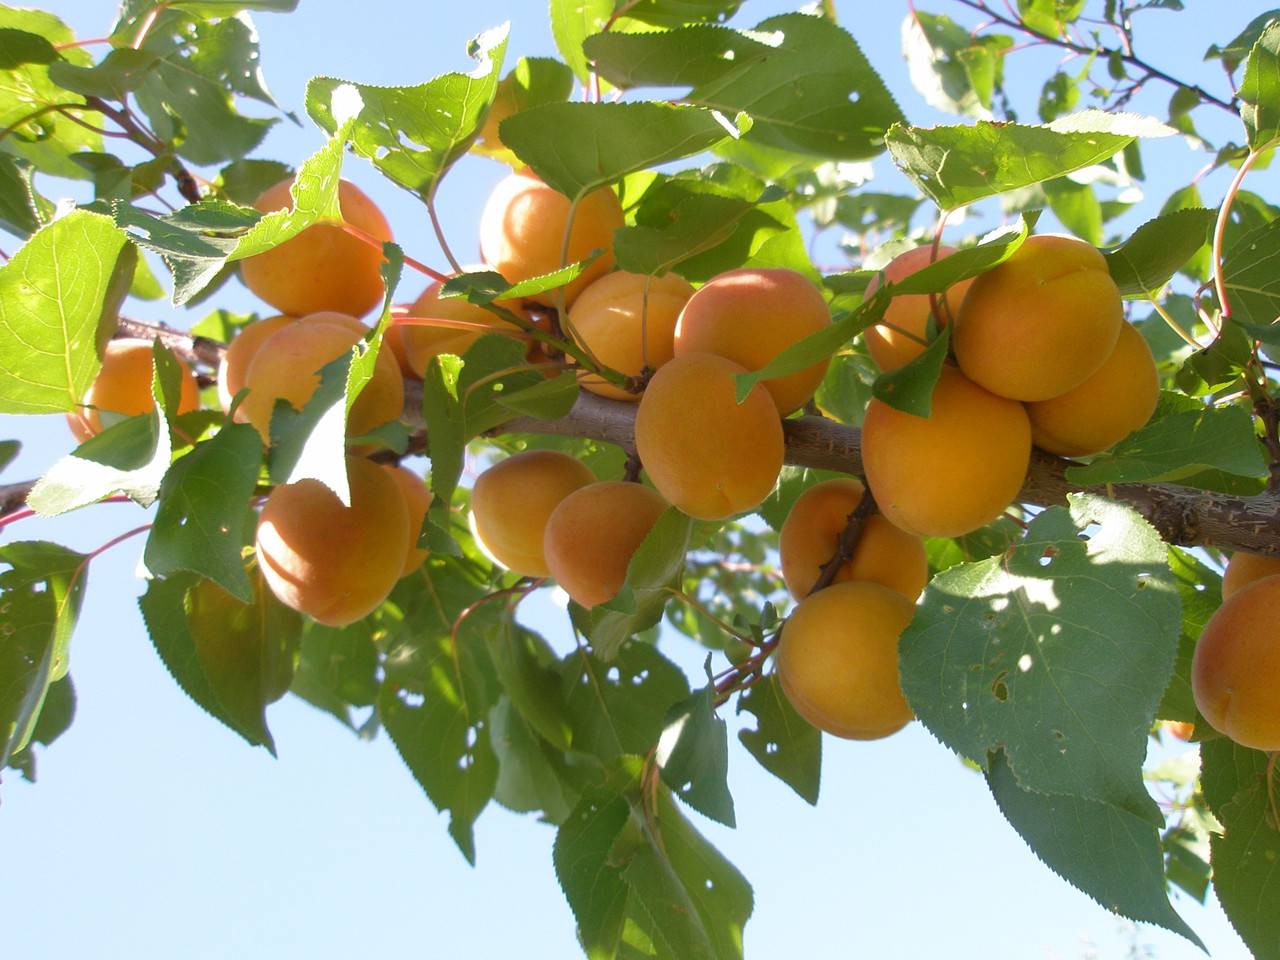 Характеристики сорта абрикосов погремок, описание достоинств и недостатков, урожайность